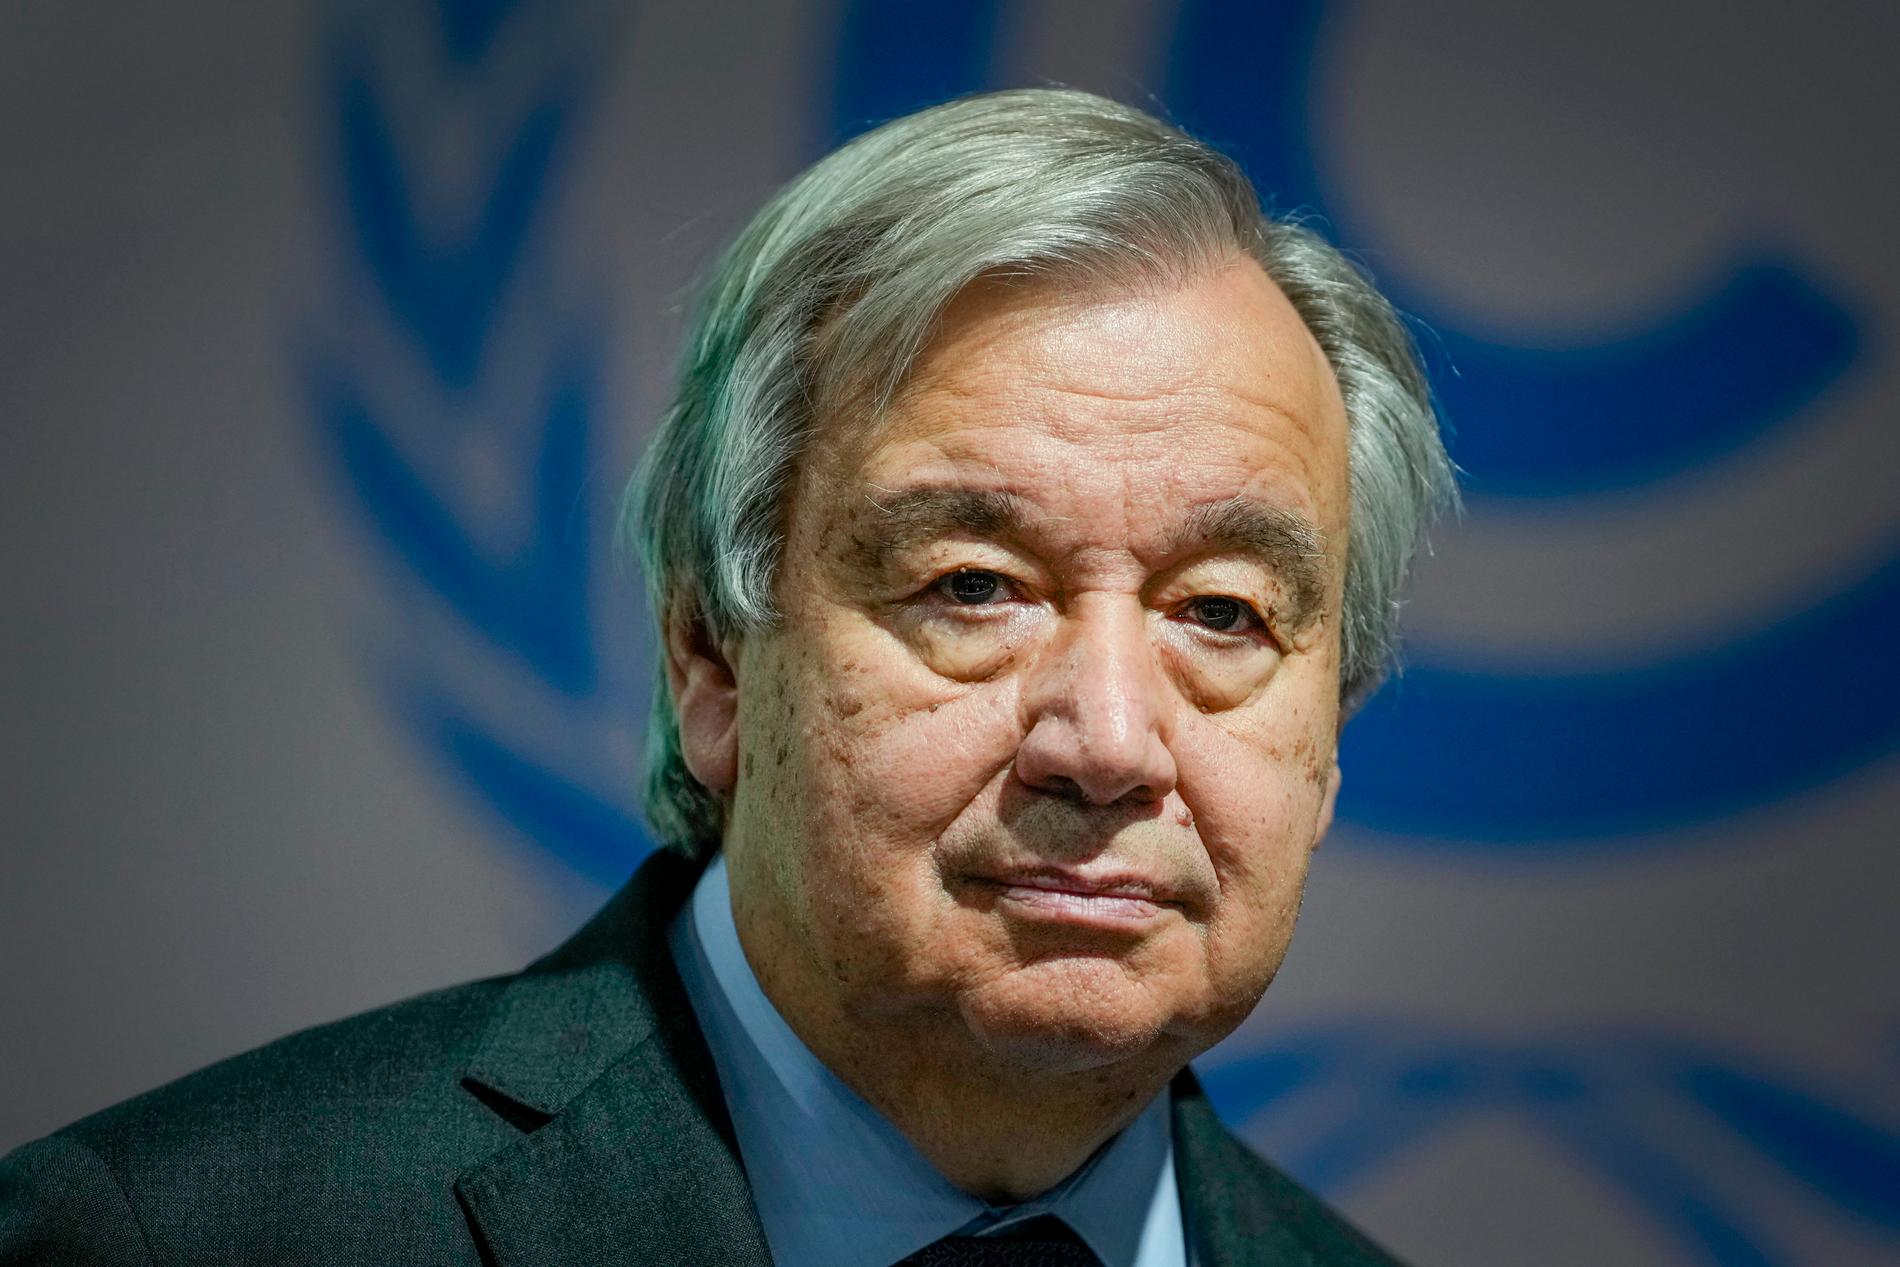 FN:s generalsekreterare Antonio Guterres.